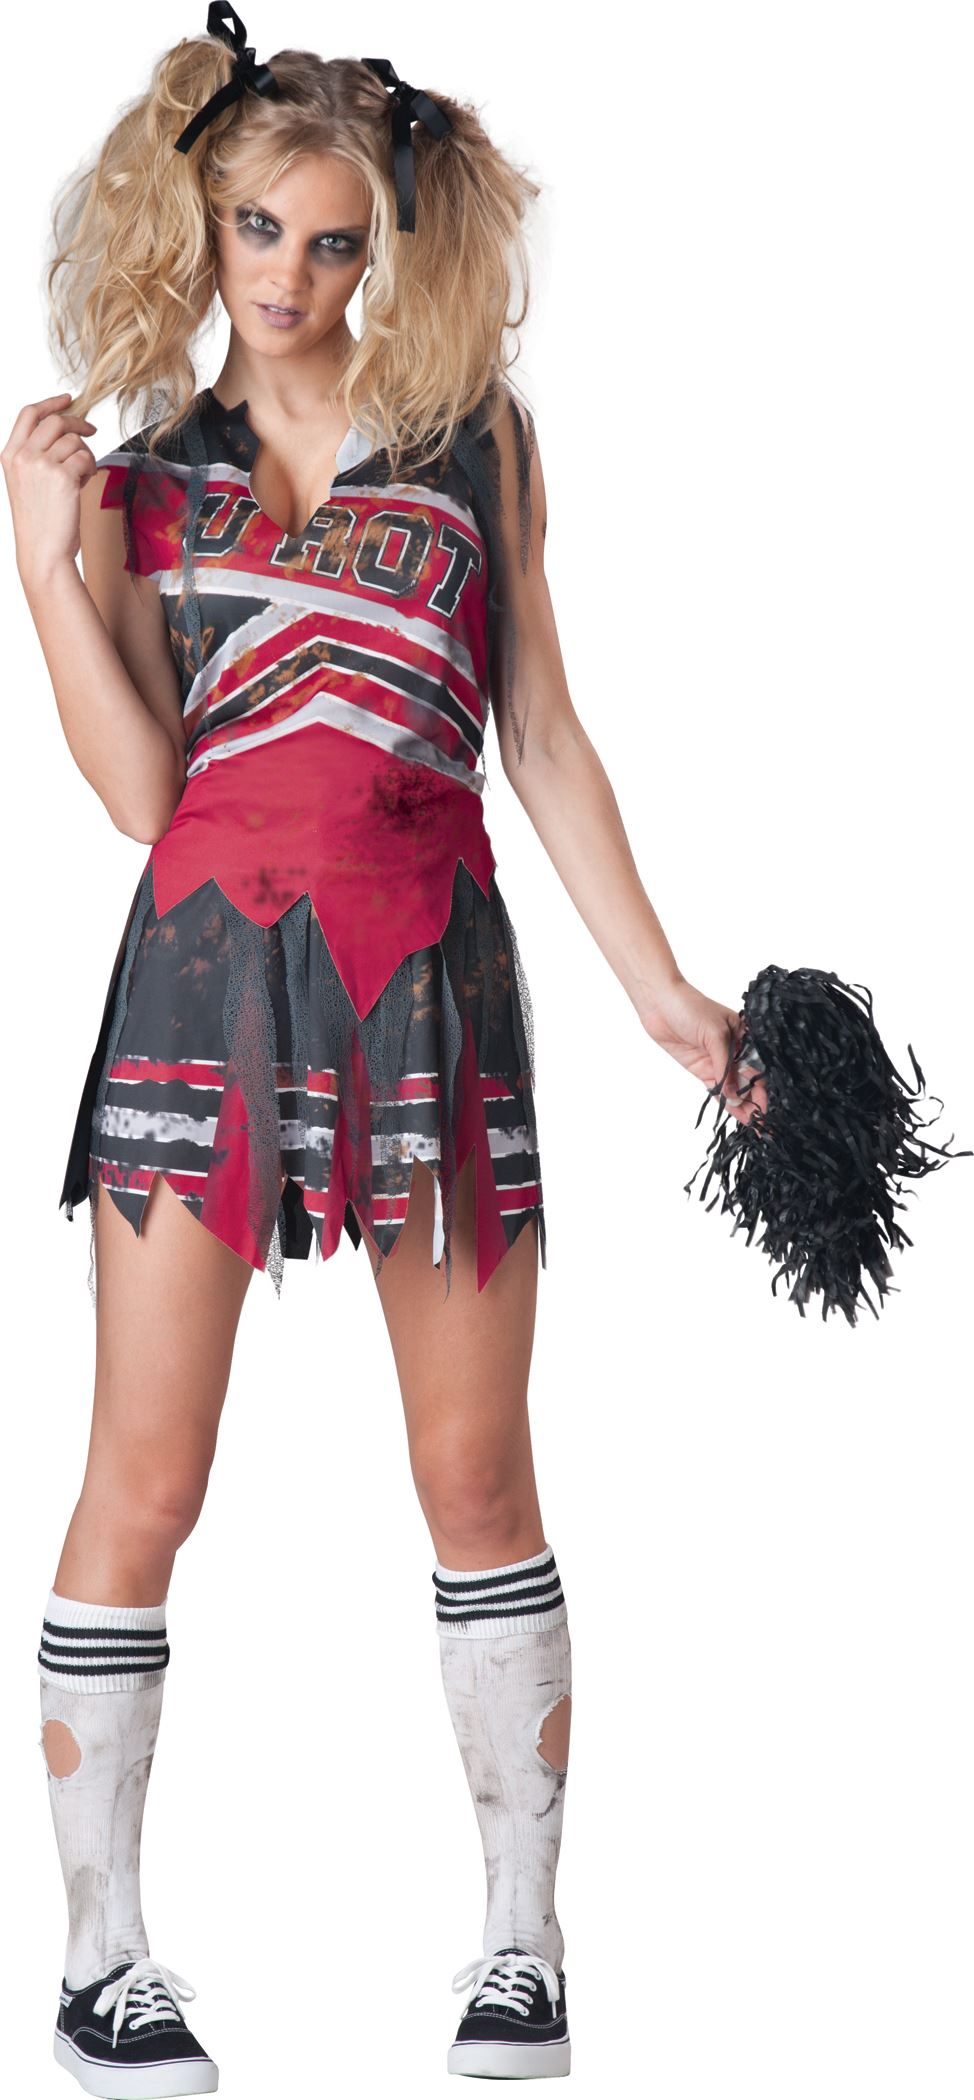 Adult Spiritless Zombie Cheerleader Women Costume 41 99 The Costume Land